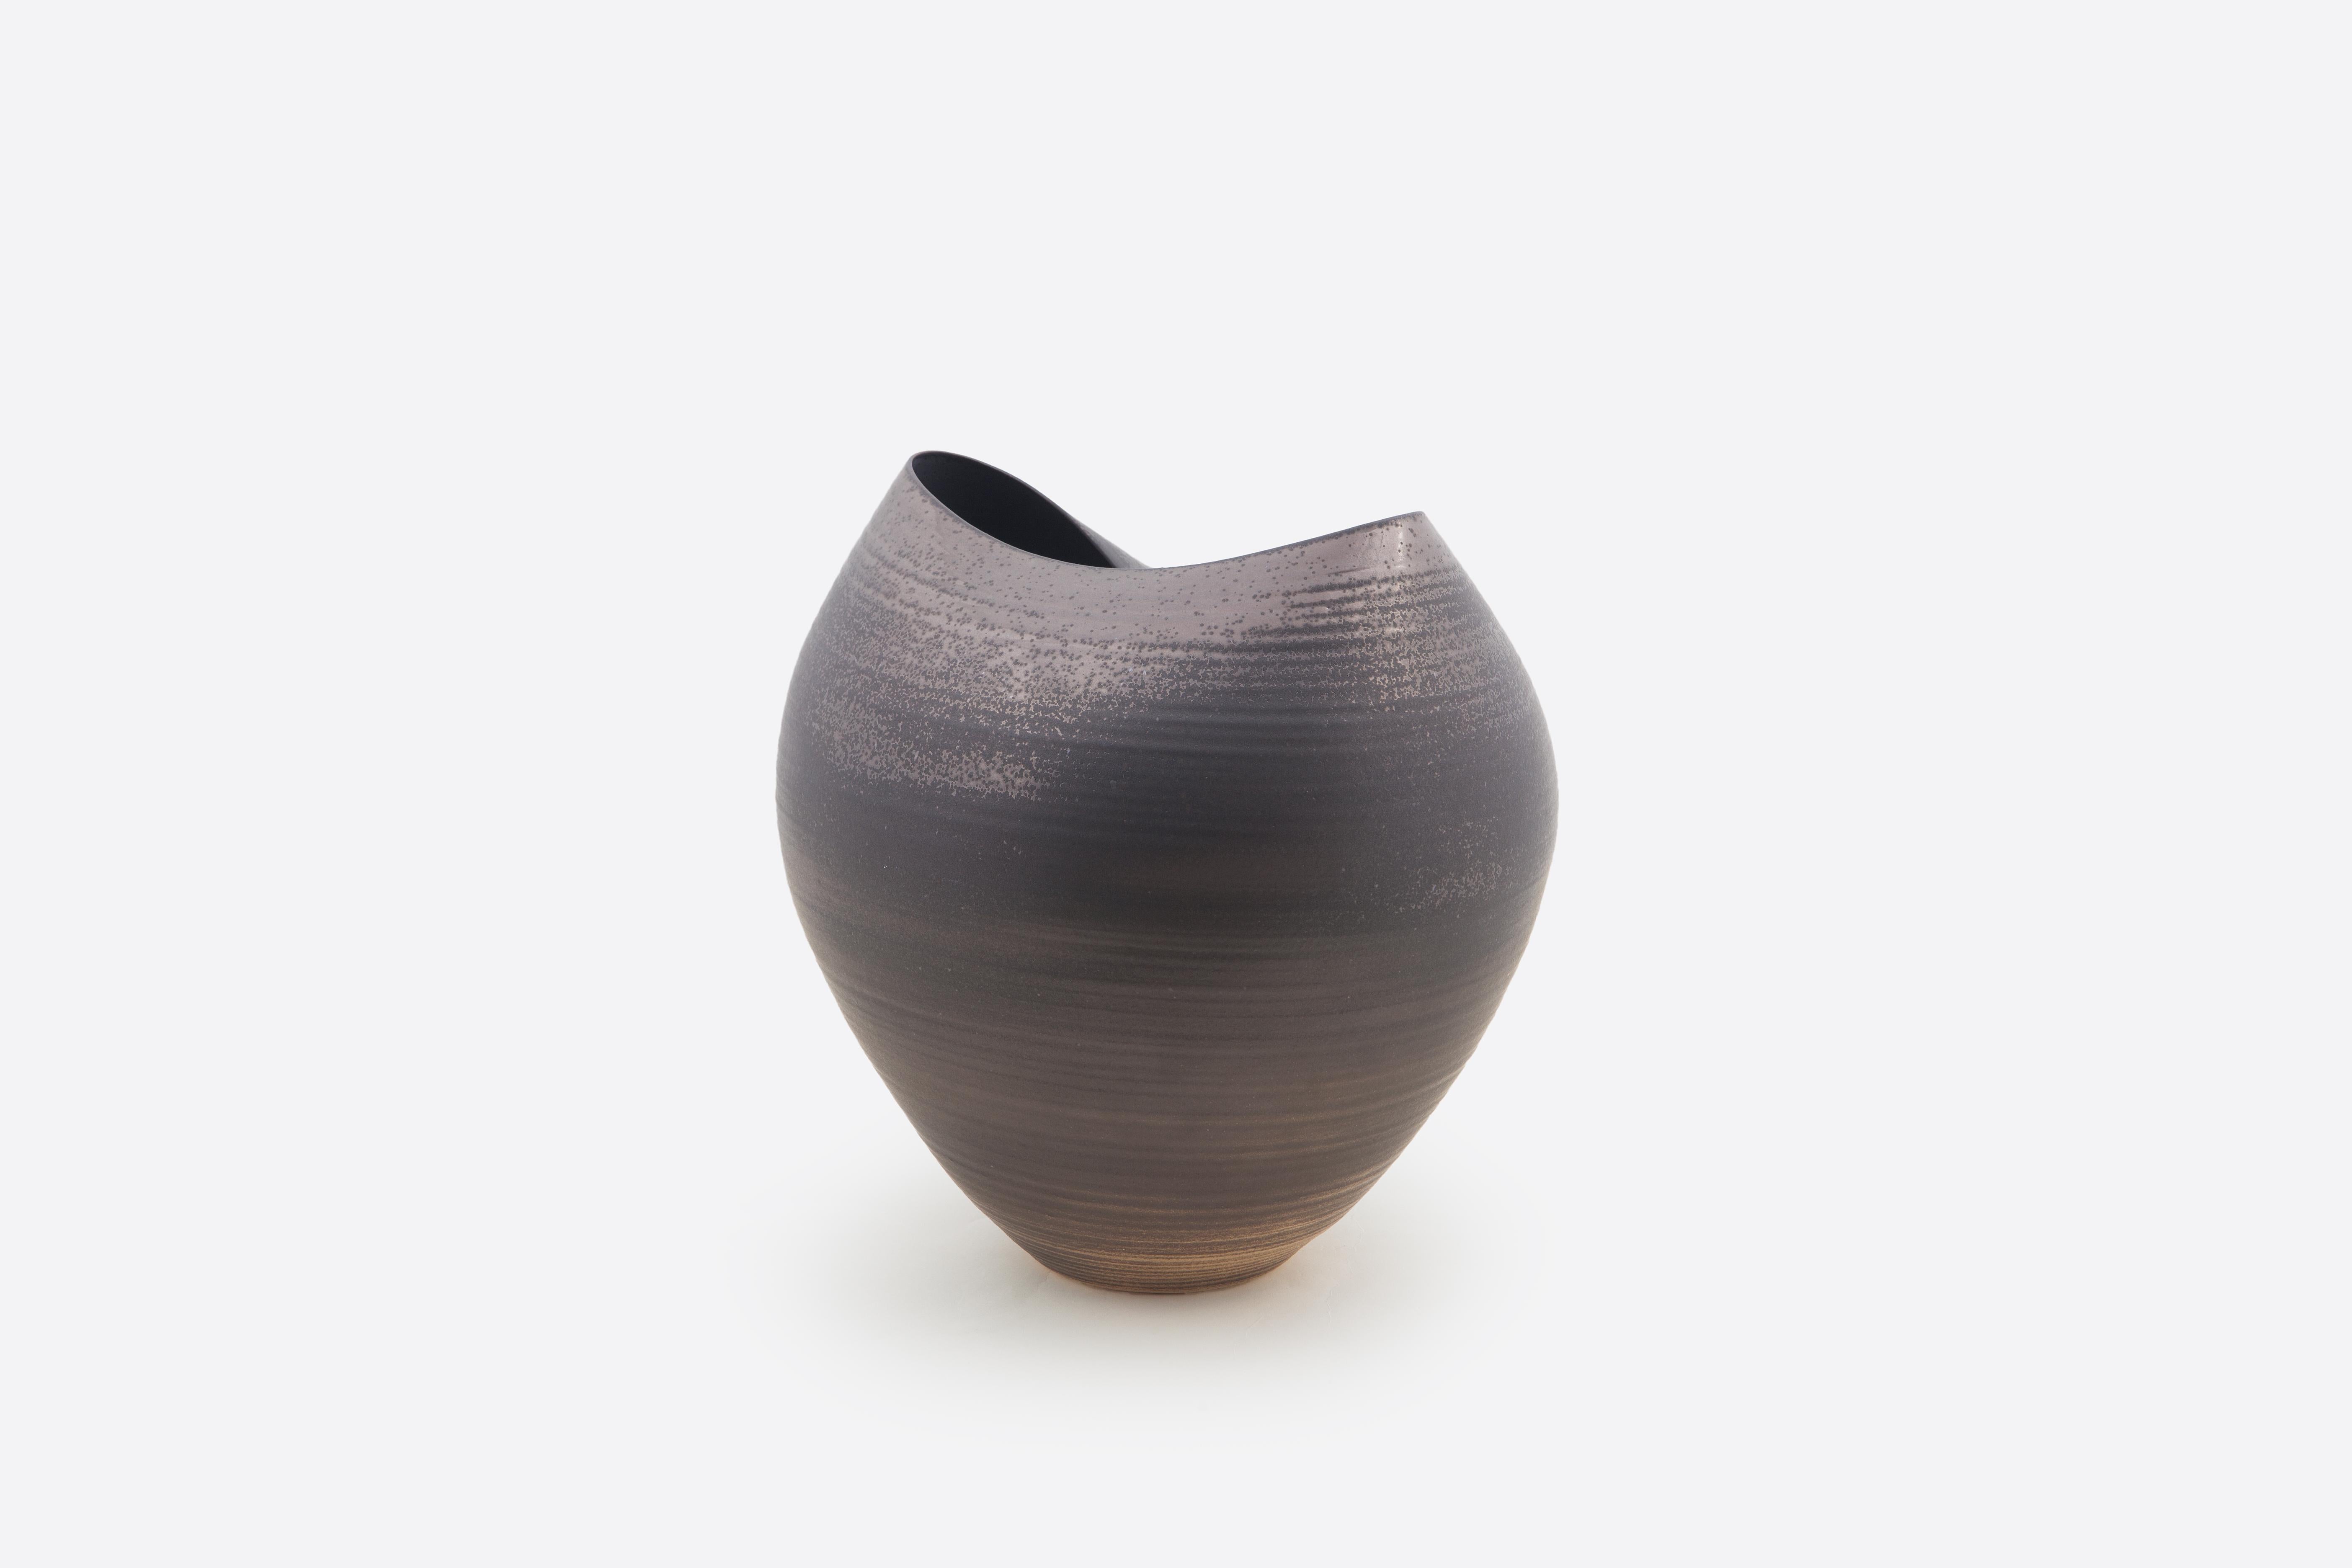 Organic Modern Large Black Collapsed Form, Vase, Interior Sculpture or Vessel, Objet D'Art